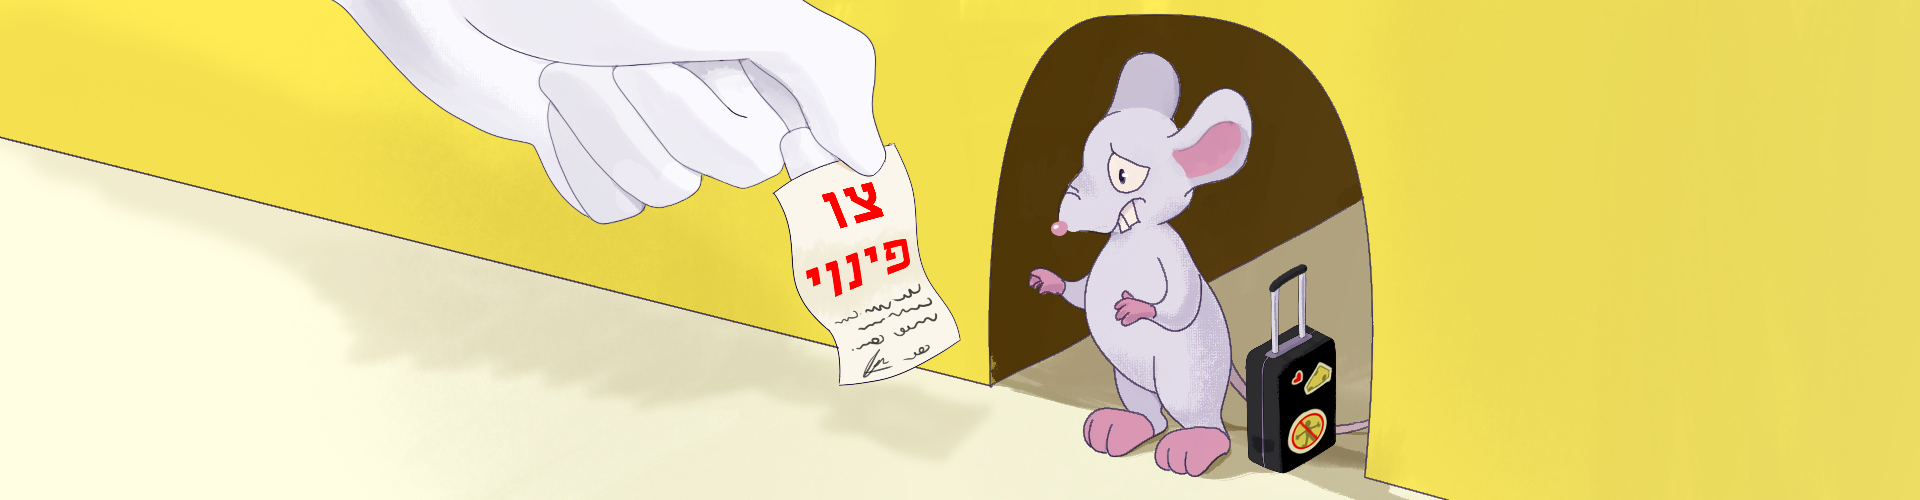 הדברת עכברים בירושלים - יוני הדברות - עושים סוף למזיקים בבית